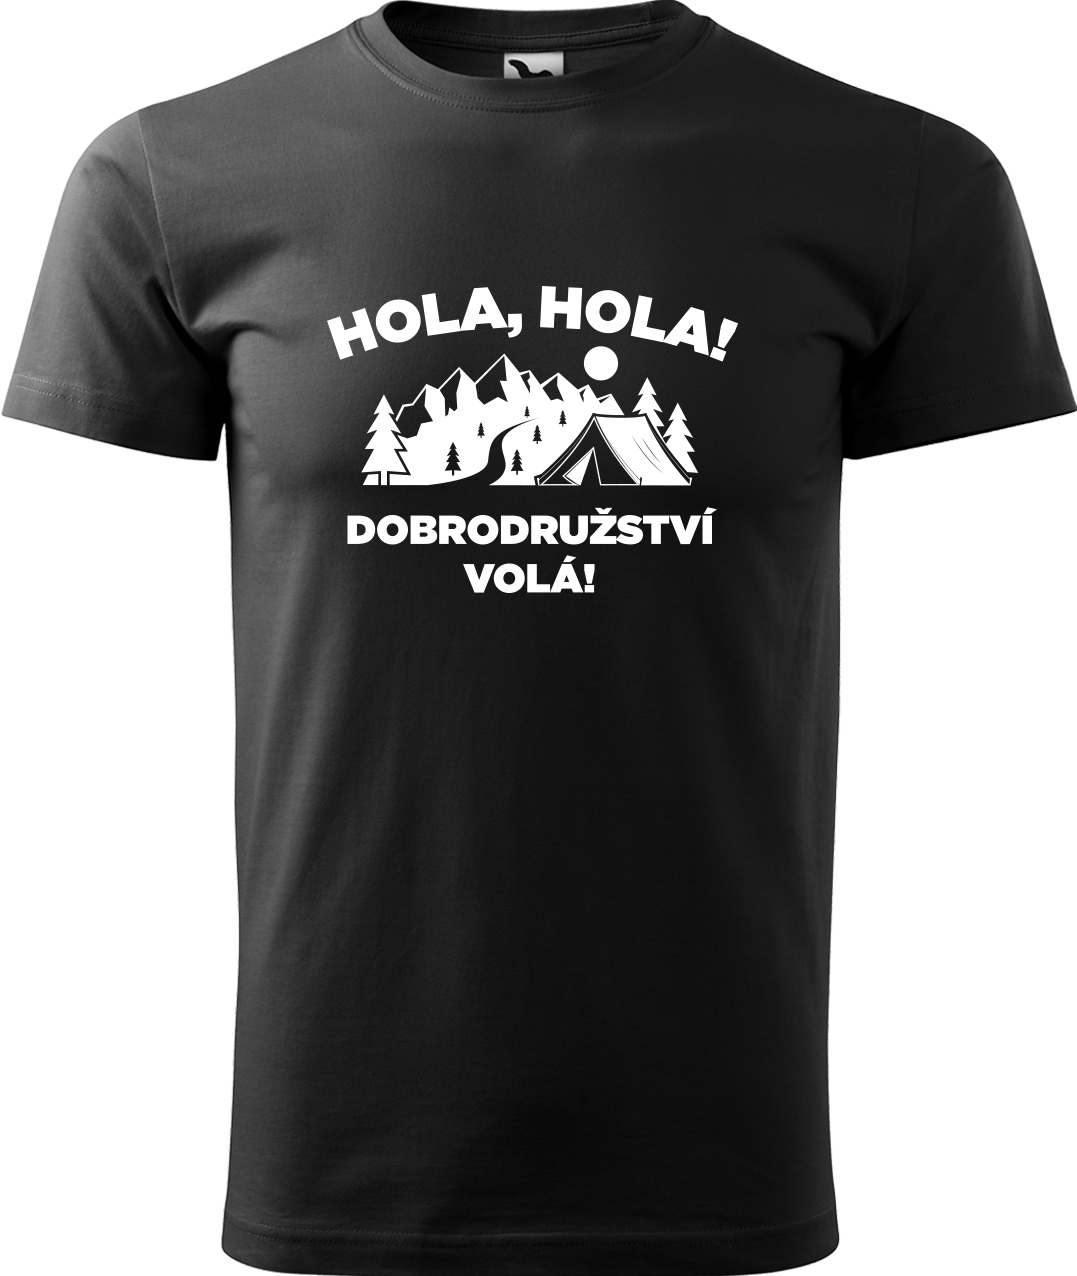 Pánské cestovatelské tričko - Hola hola! Dobrodružství volá! Velikost: S, Barva: Černá (01), Střih: pánský